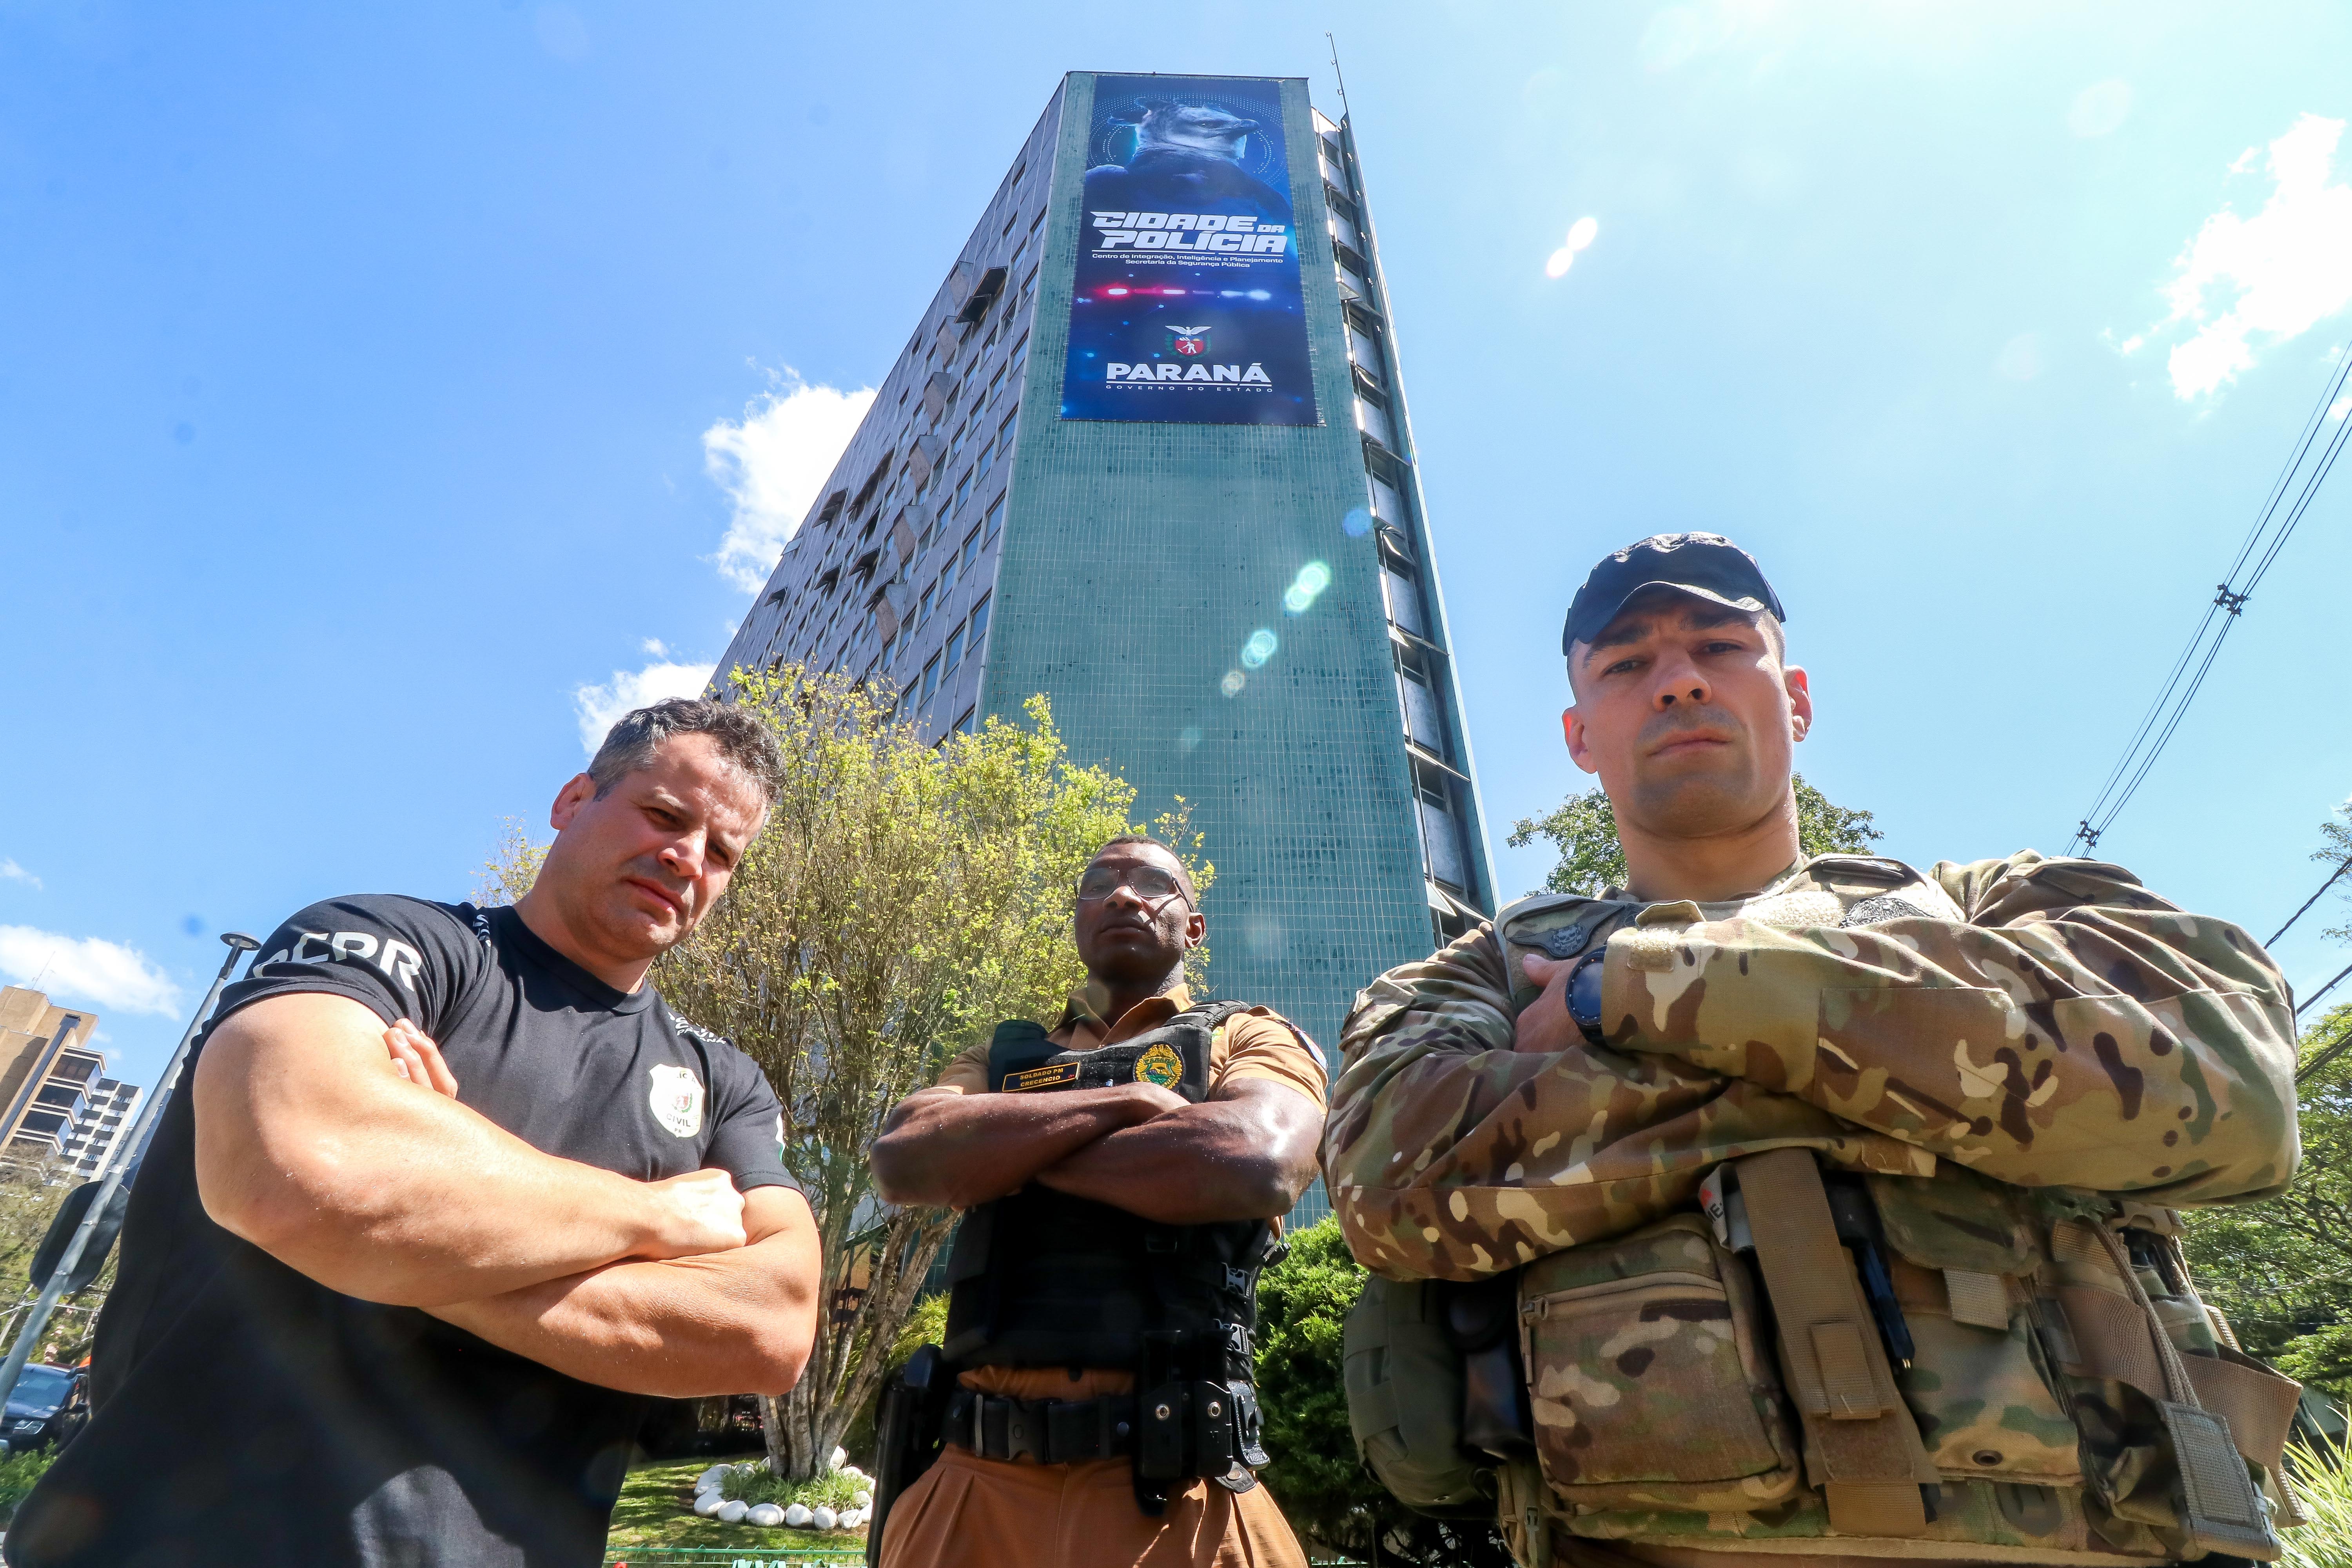 Cinco policiais paranaenses disputam o maior torneio de combate para a categoria do País